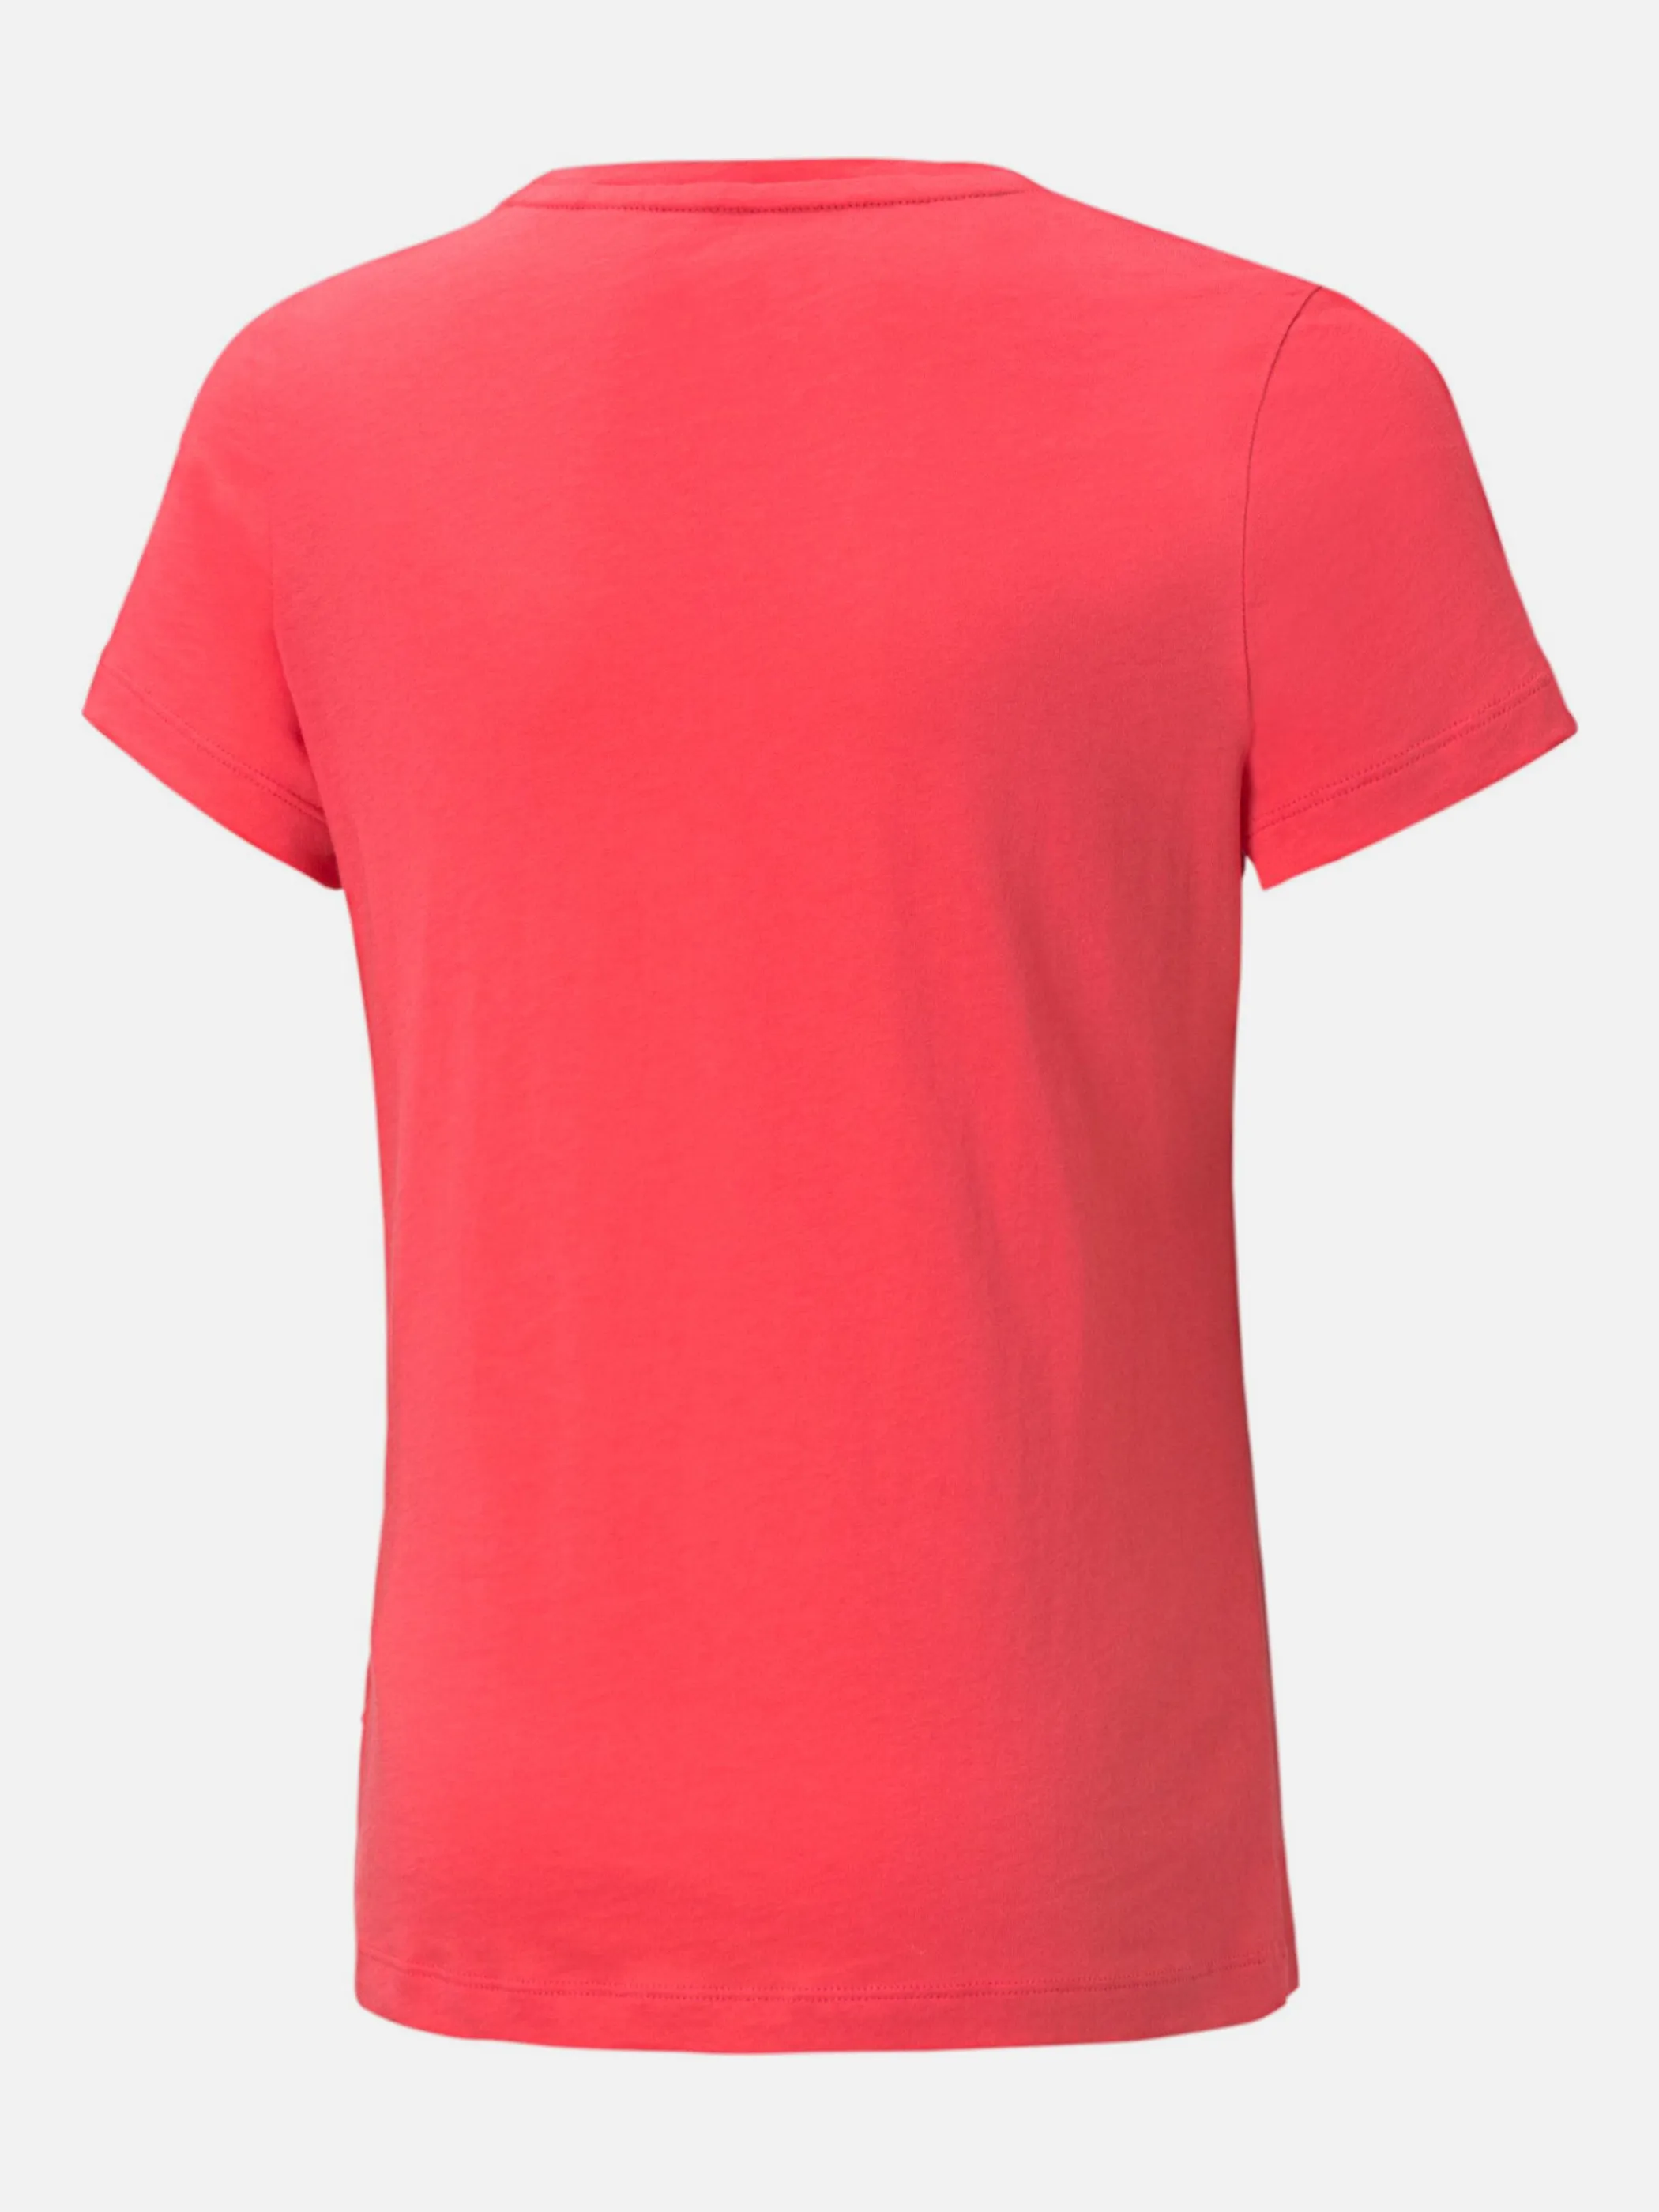 Puma 587029 Md-T-Shirt mit Logo Pink 856620 35 2